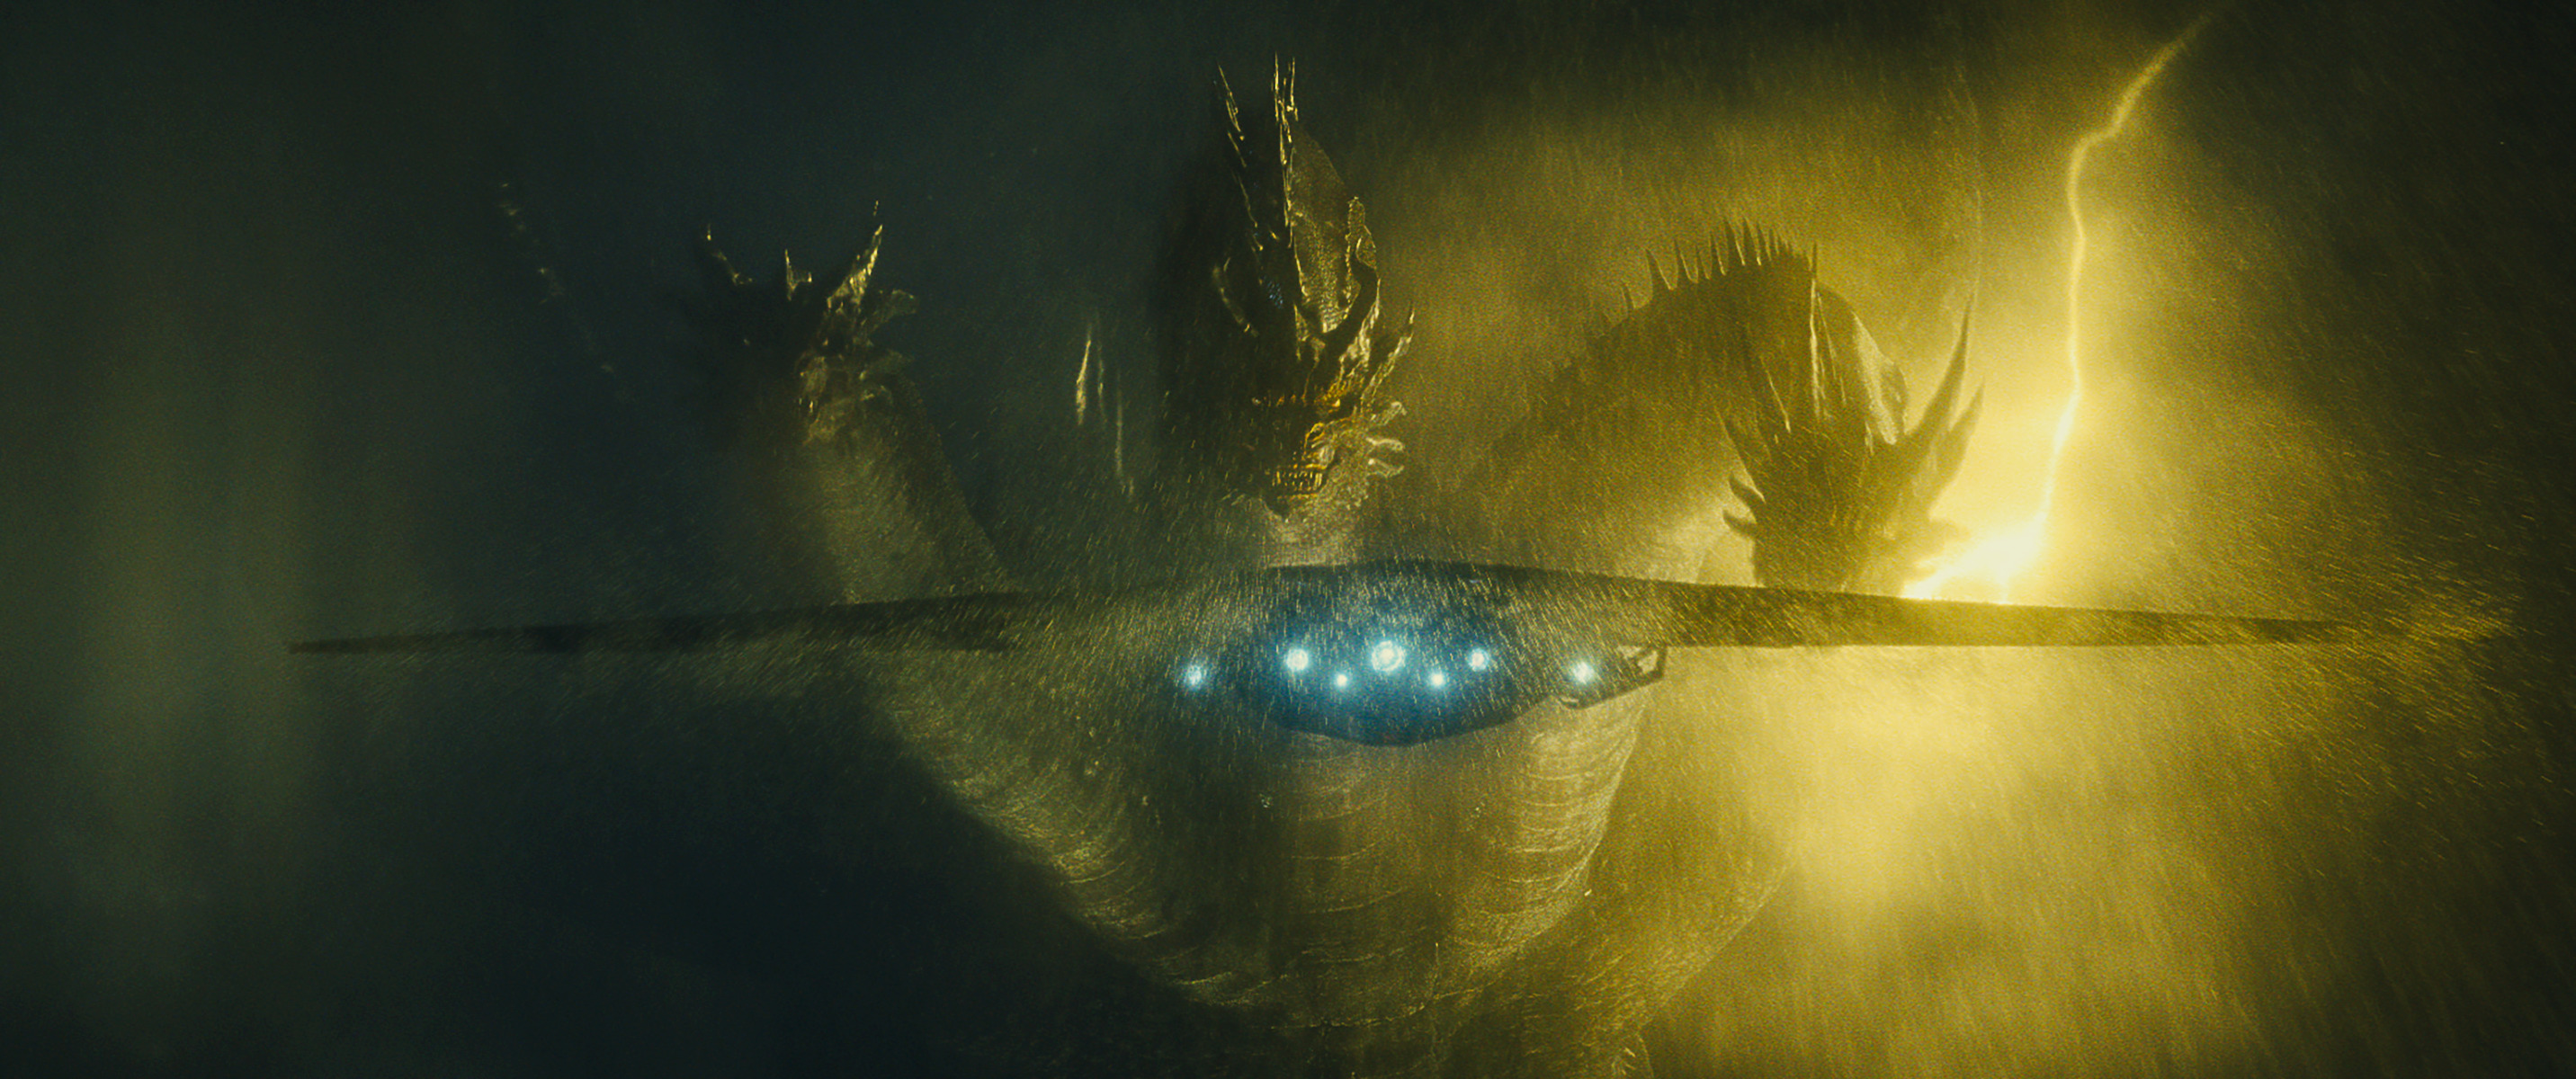 Godzilla King Of The Monsters 4k Ultra Hd Blu Ray